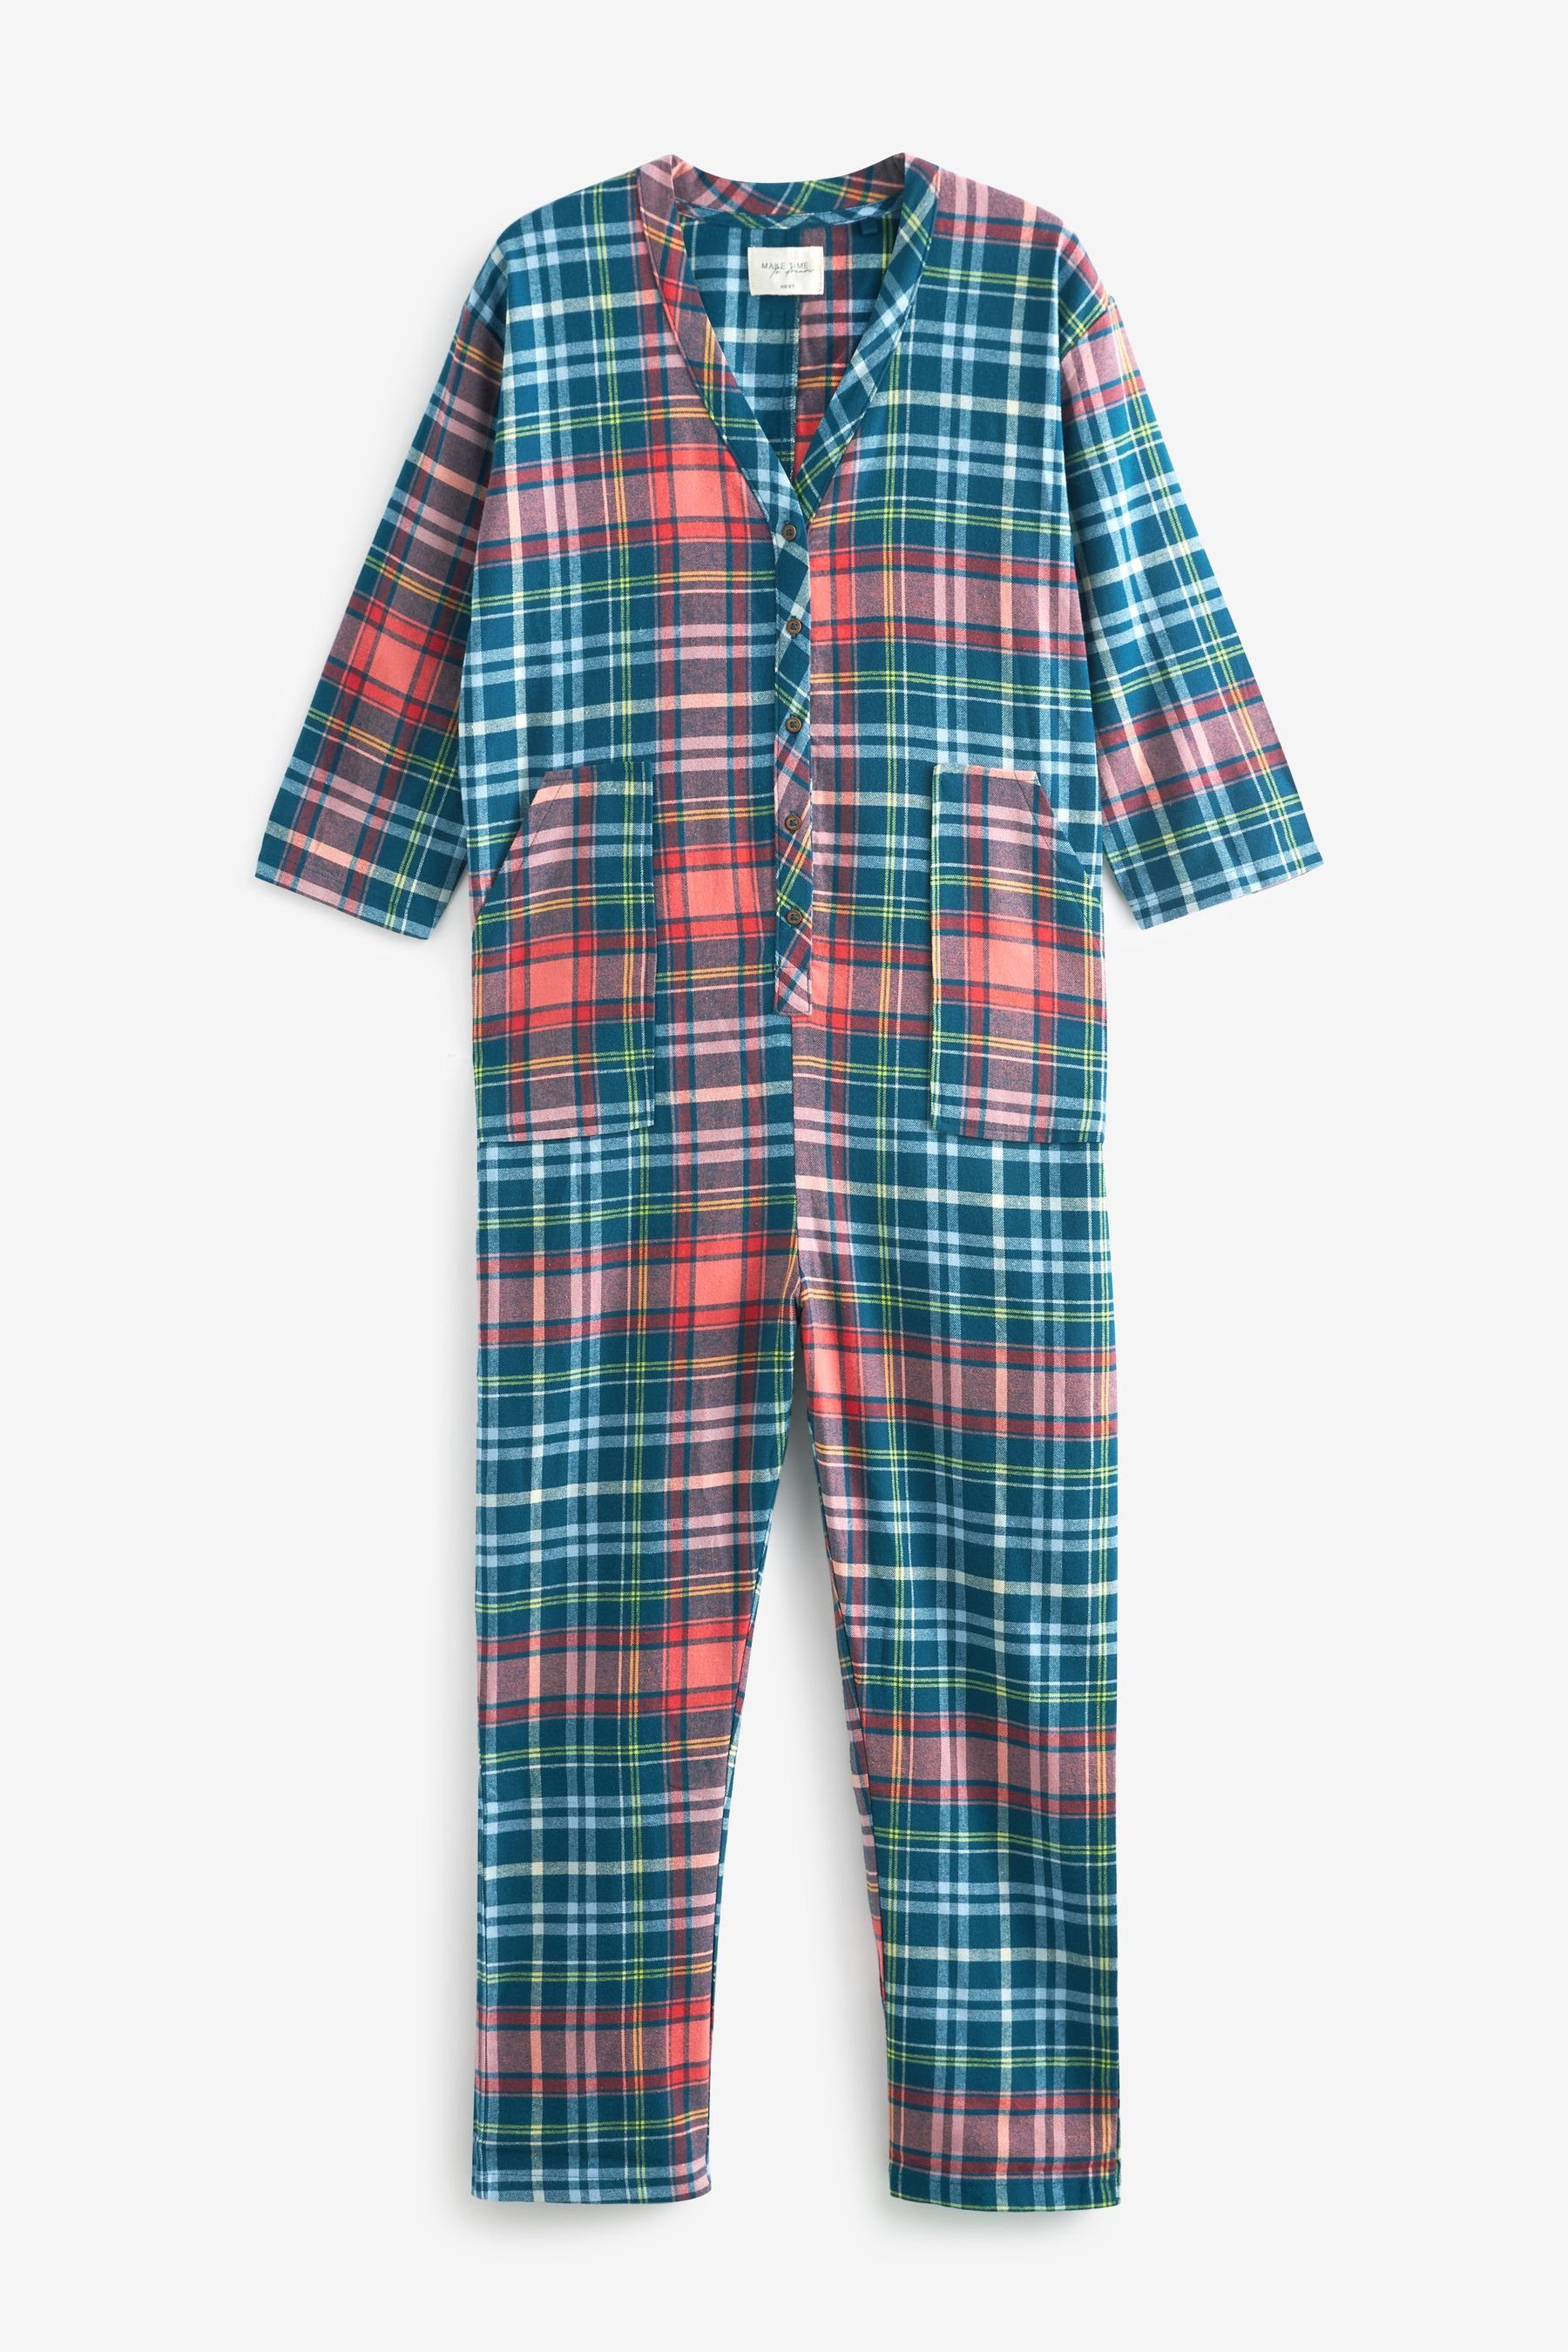 Next Pyjama tlg) (1 Baumwoll-Flanell aus Einteiler